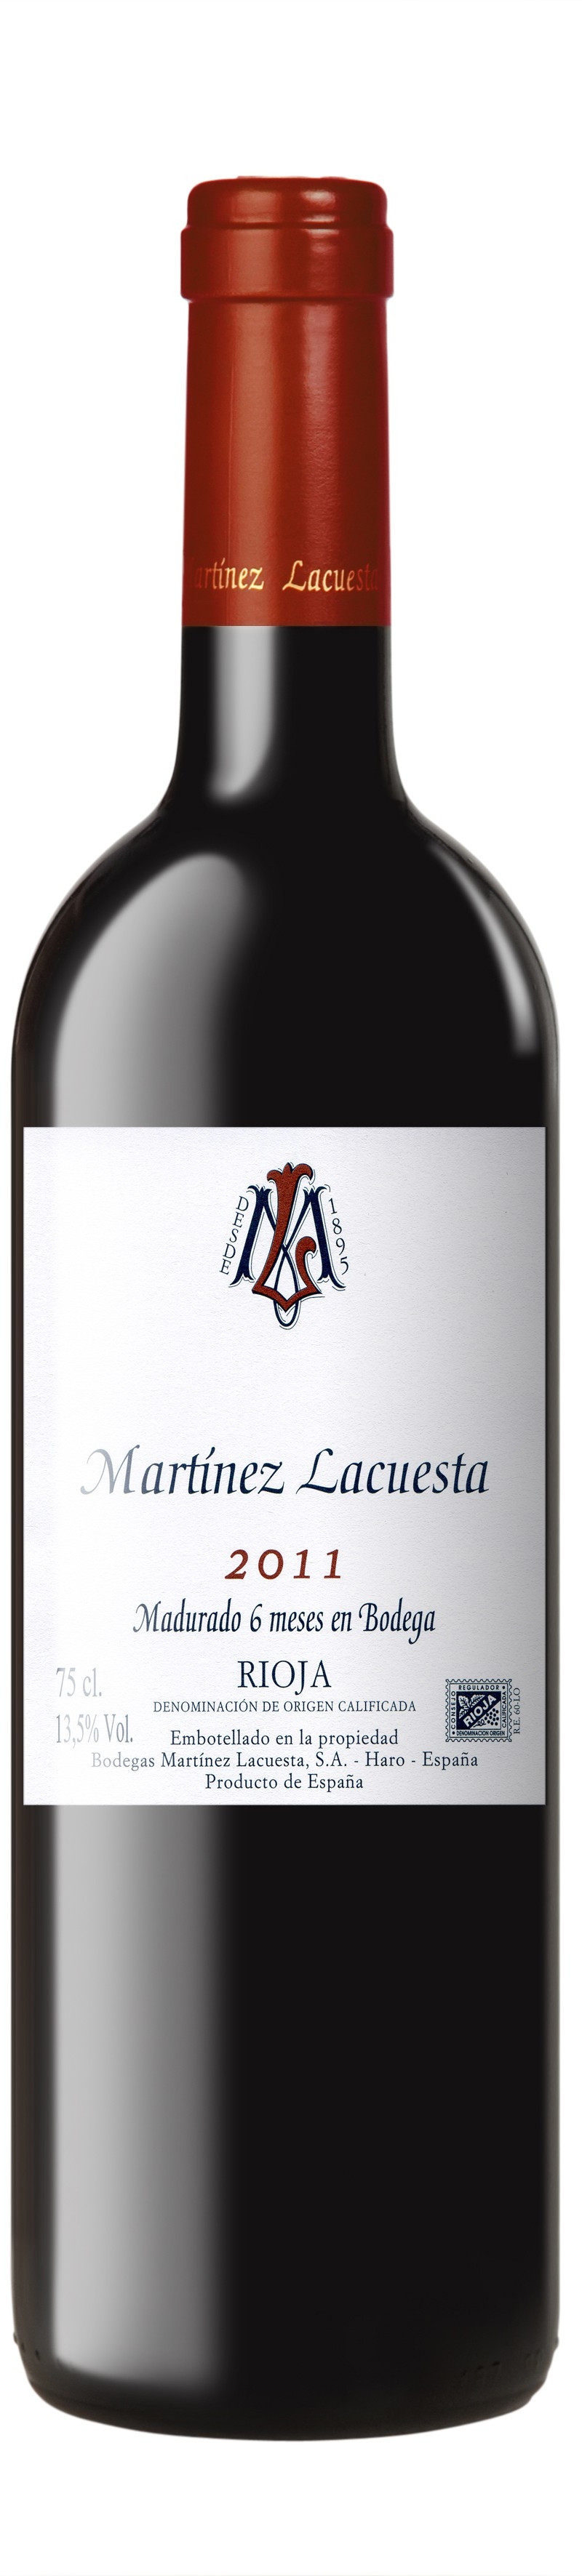 Martinez Lacuesta  Rioja  1/2 Bottle